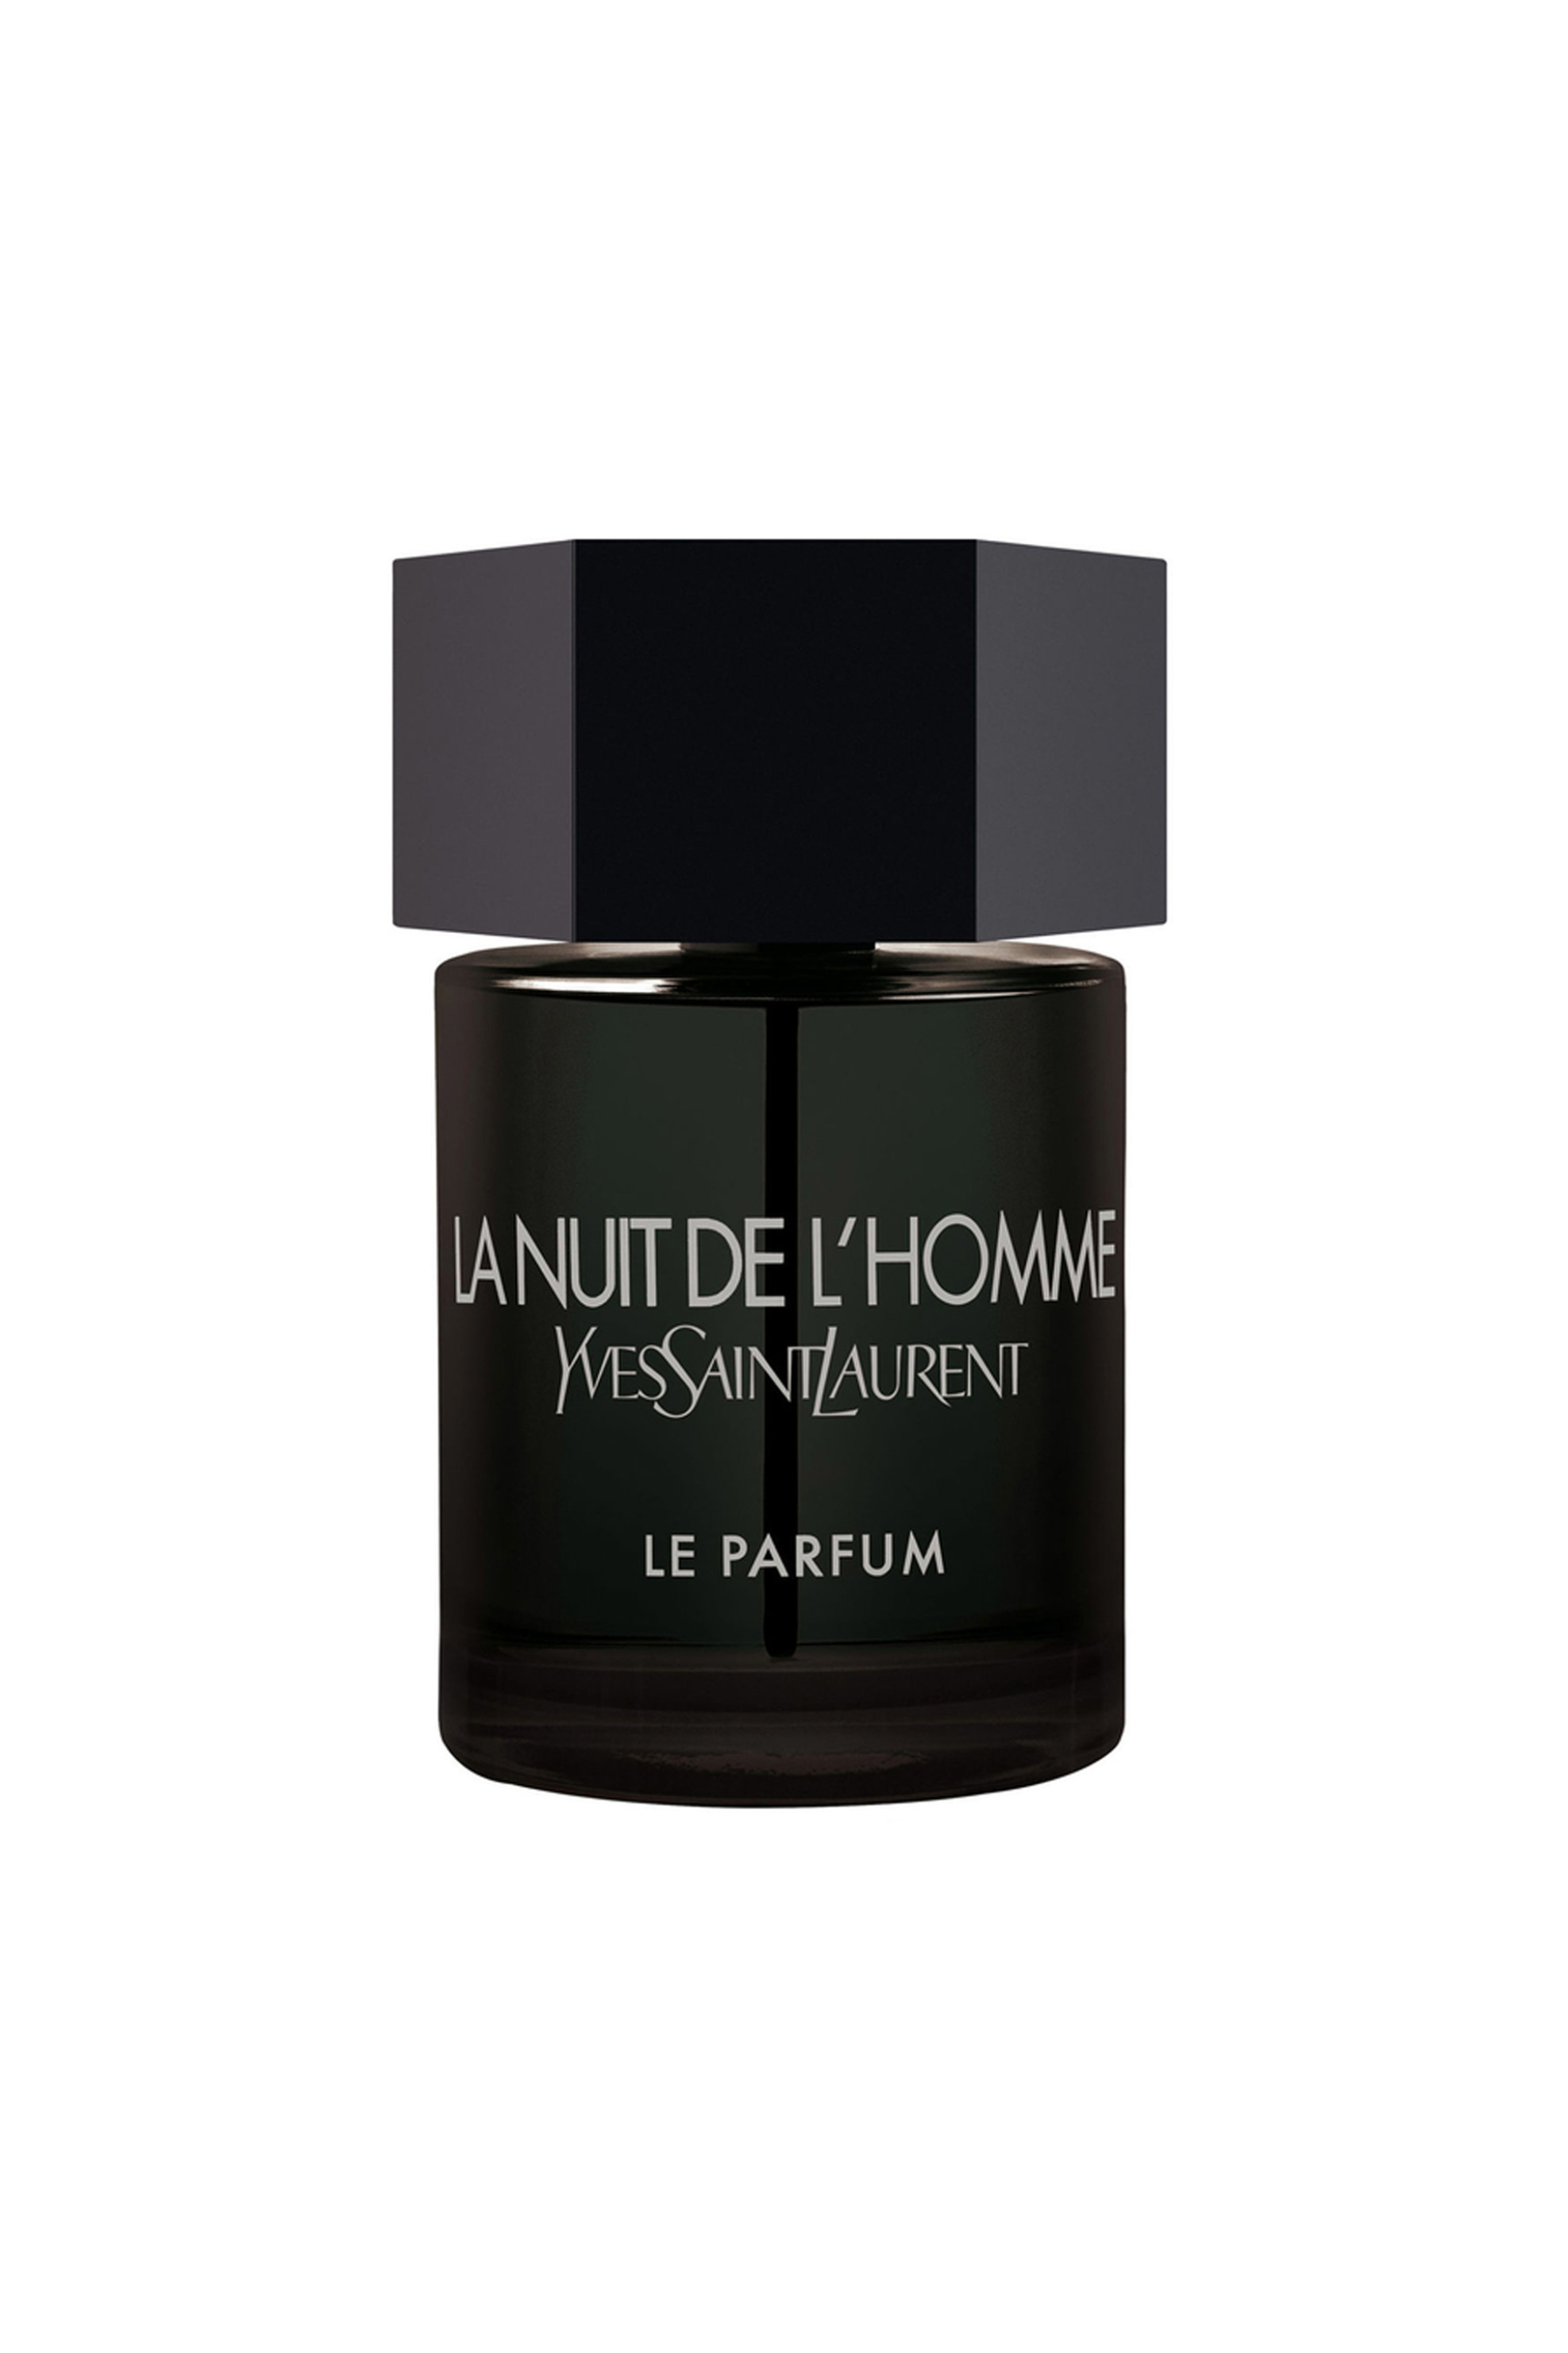 Προϊόντα Ομορφιάς > ΑΡΩΜΑΤΑ > Ανδρικά Αρώματα > Eau de Parfum - Parfum Yves Saint Laurent La Nuit De L’ Homme Le Parfum - 3365440621053